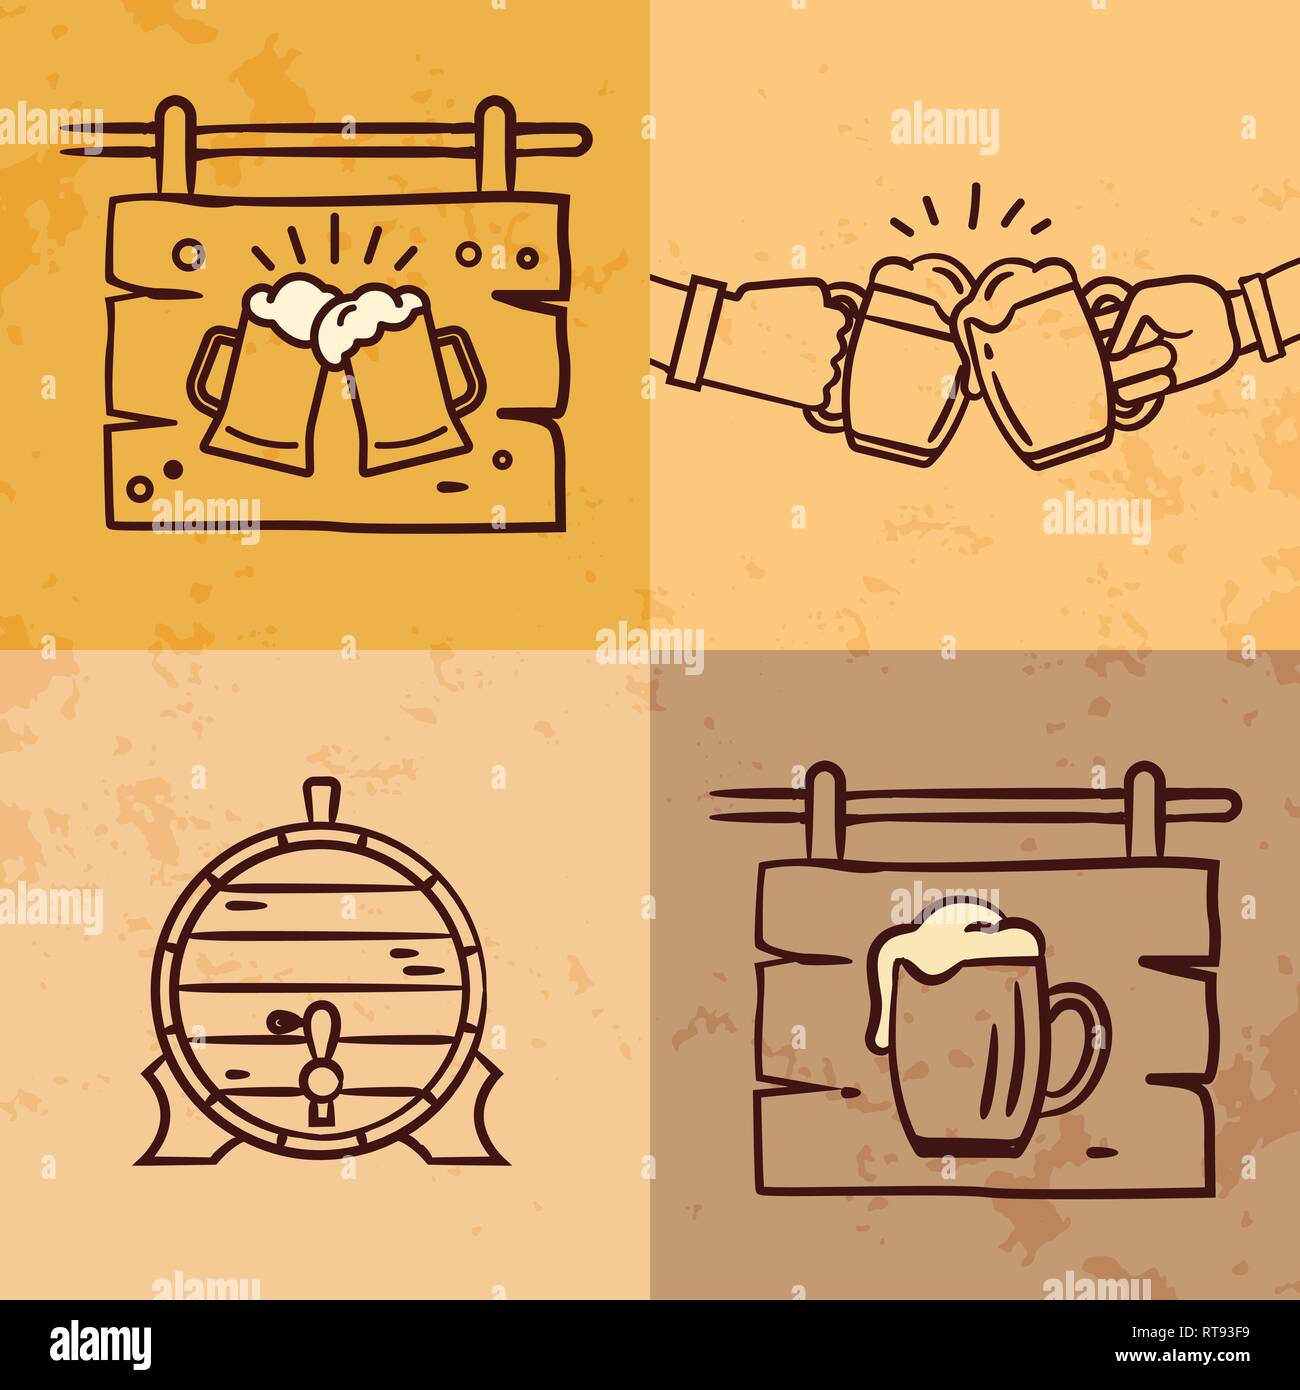 Craft beer logo collection, lettering vector illustration emblem design. Stock Vector